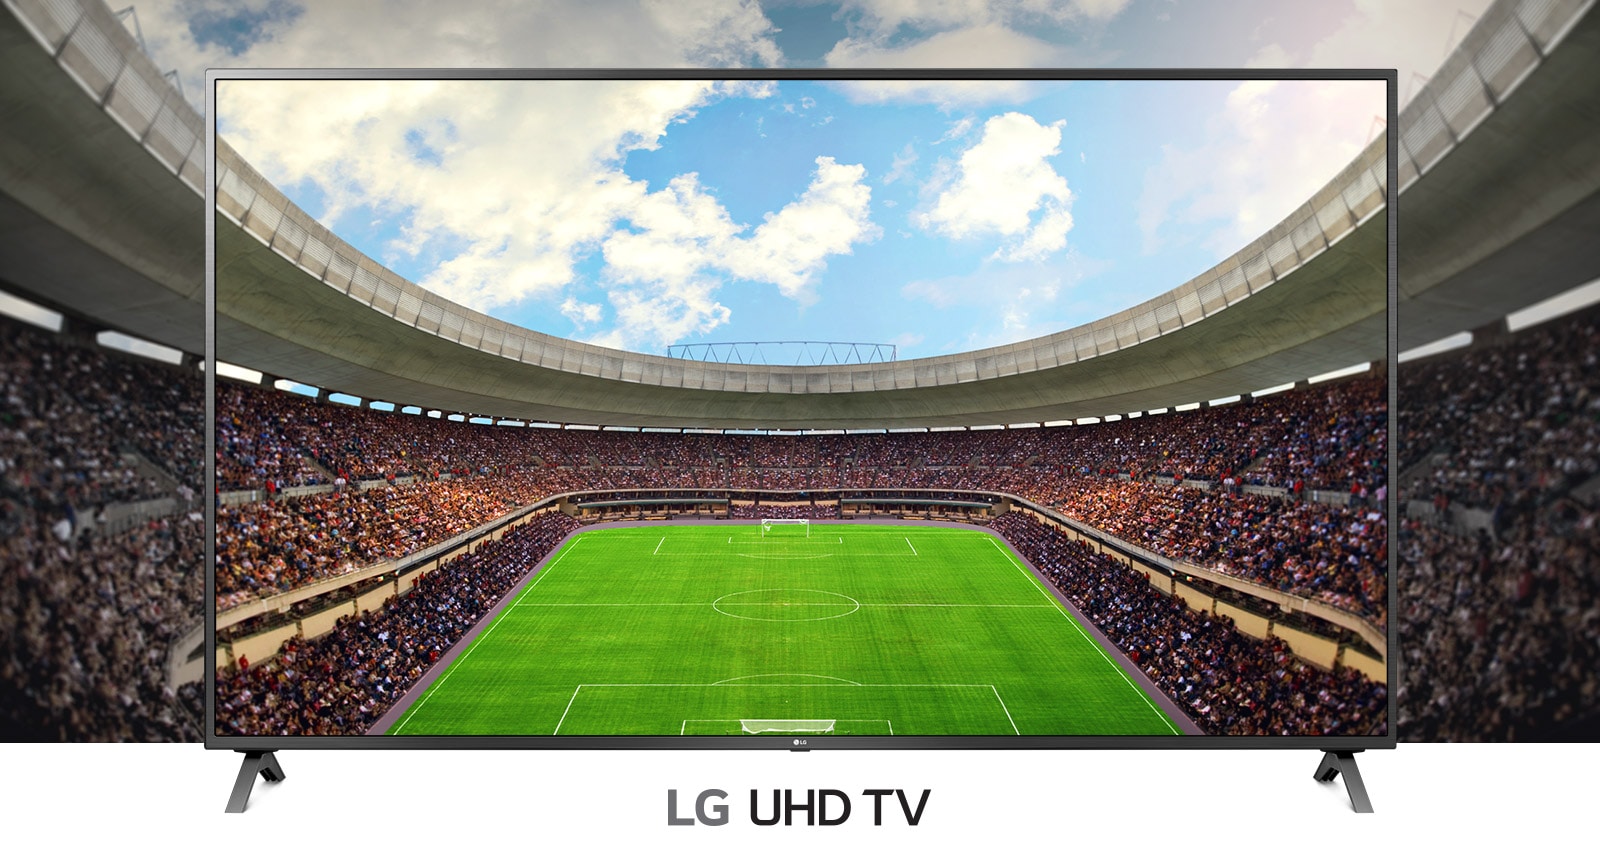 Panoramski prikaz nogometnog stadiona ispunjenog gledateljima prikazan u okviru televizora.